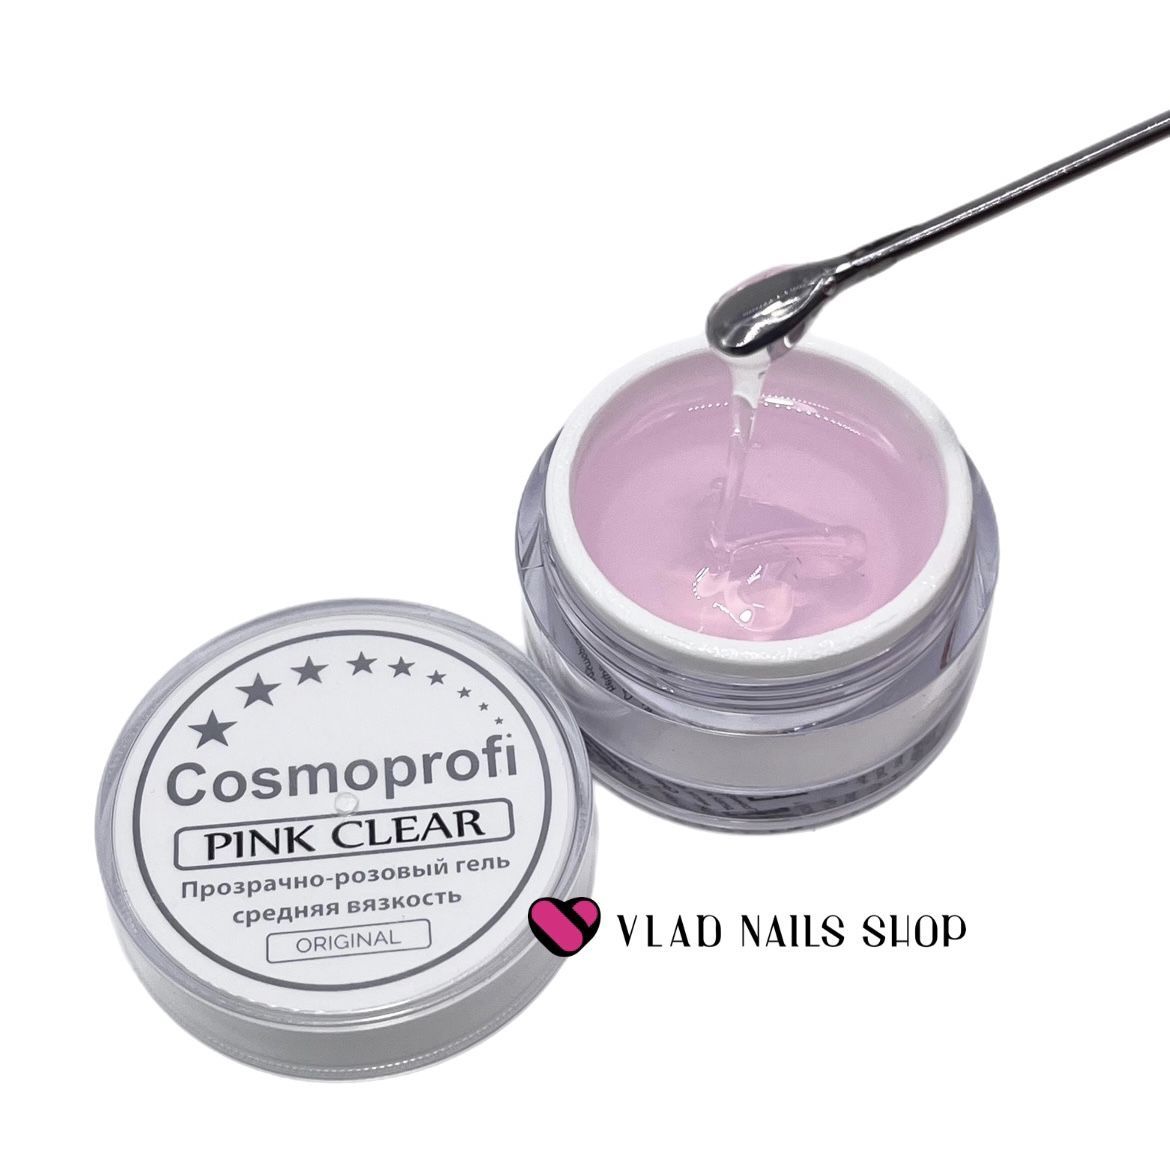 Гель COSMOPROFI прозразно-розовый средняя вязкость Pinк Clear 15гр.